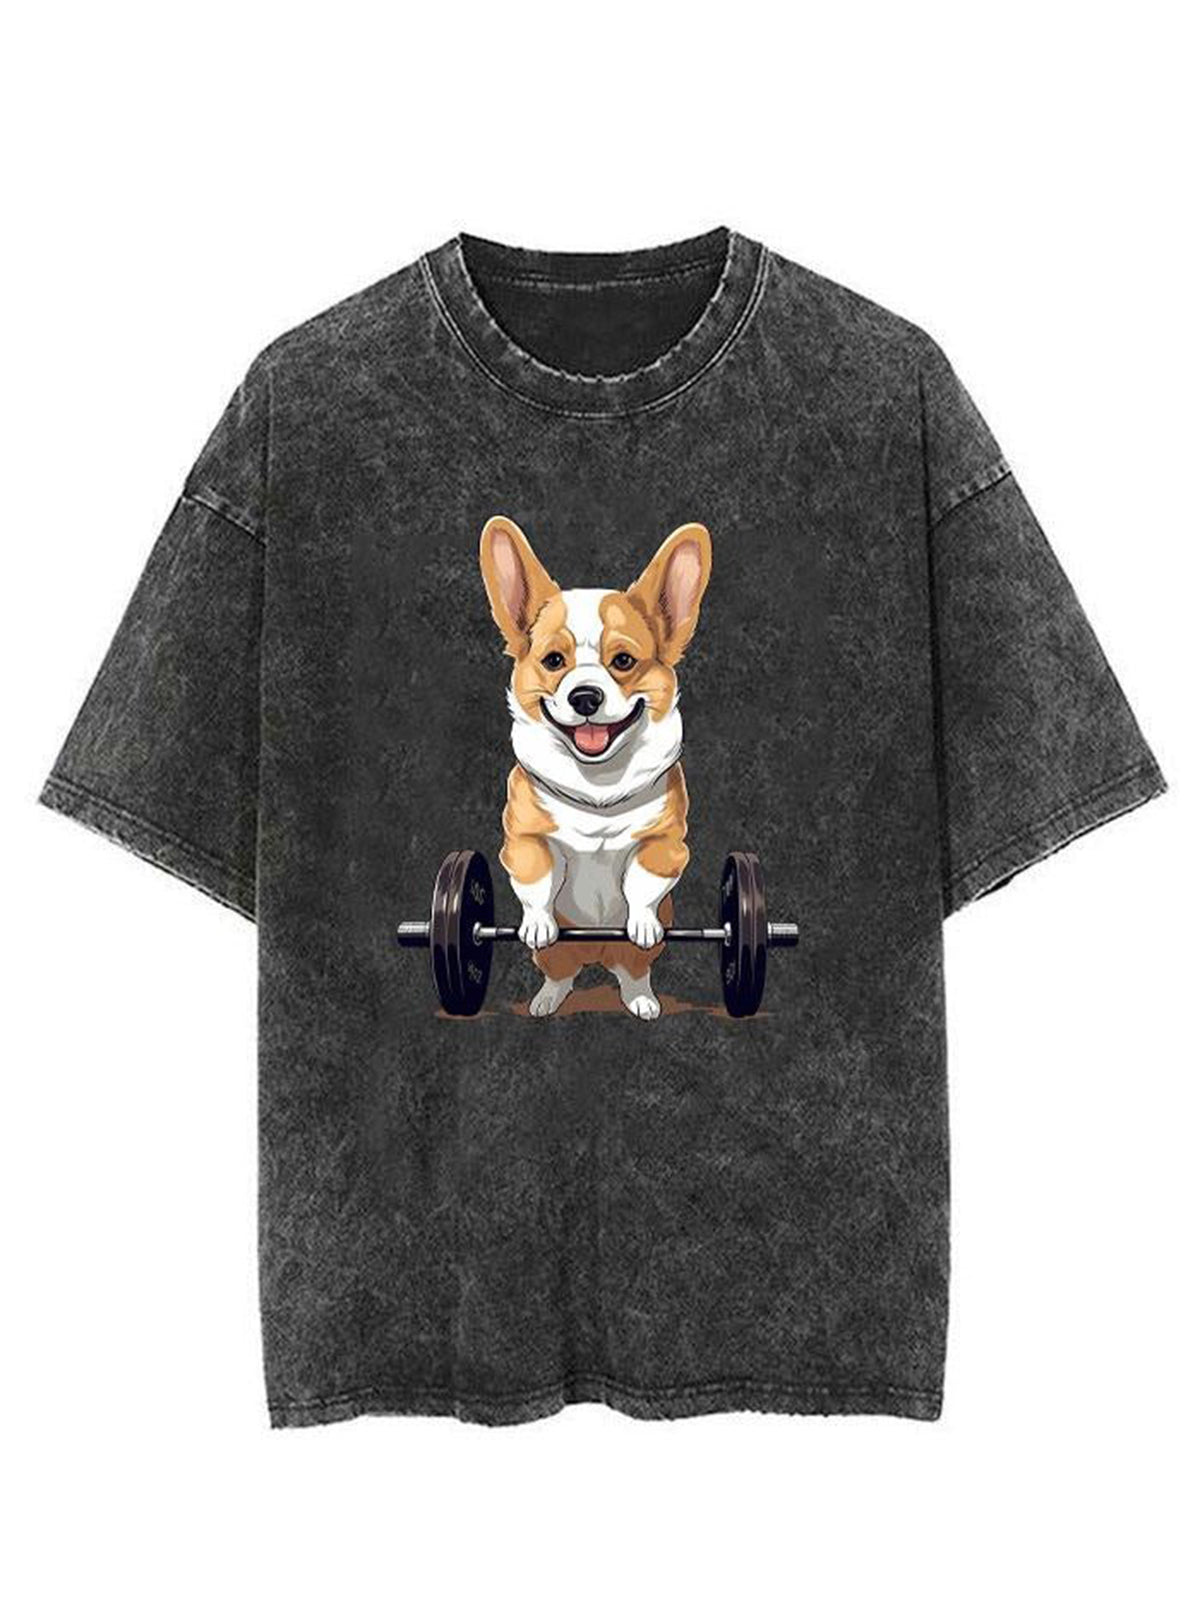 Gitness Dog Unisex Short Sleeve Washed T-Shirt